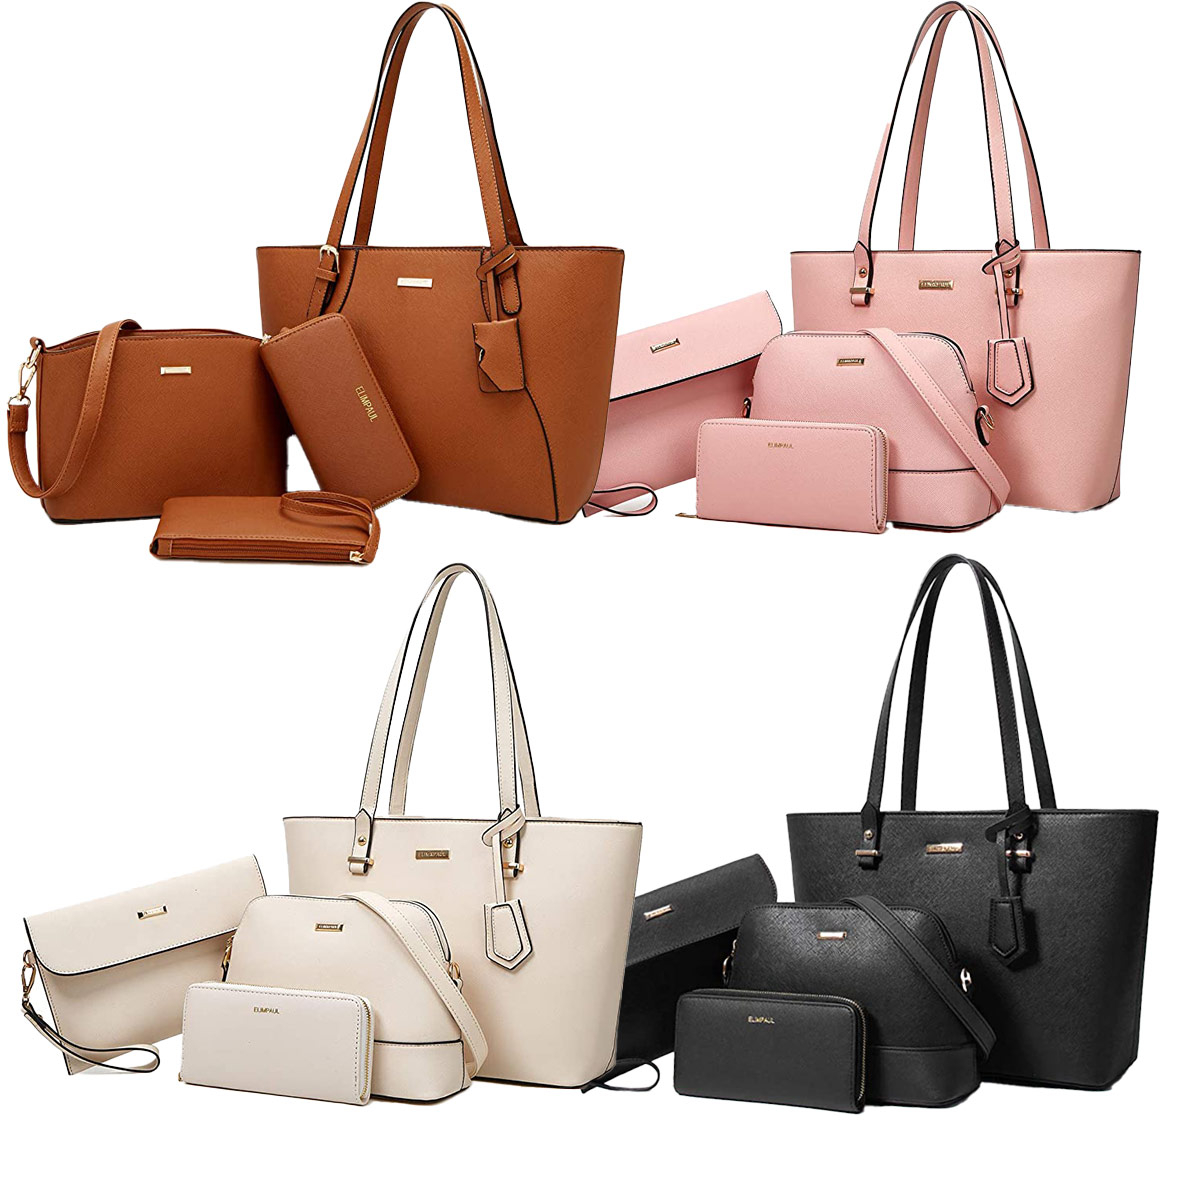 Fashion Handbags For Women, Handbags and Purses